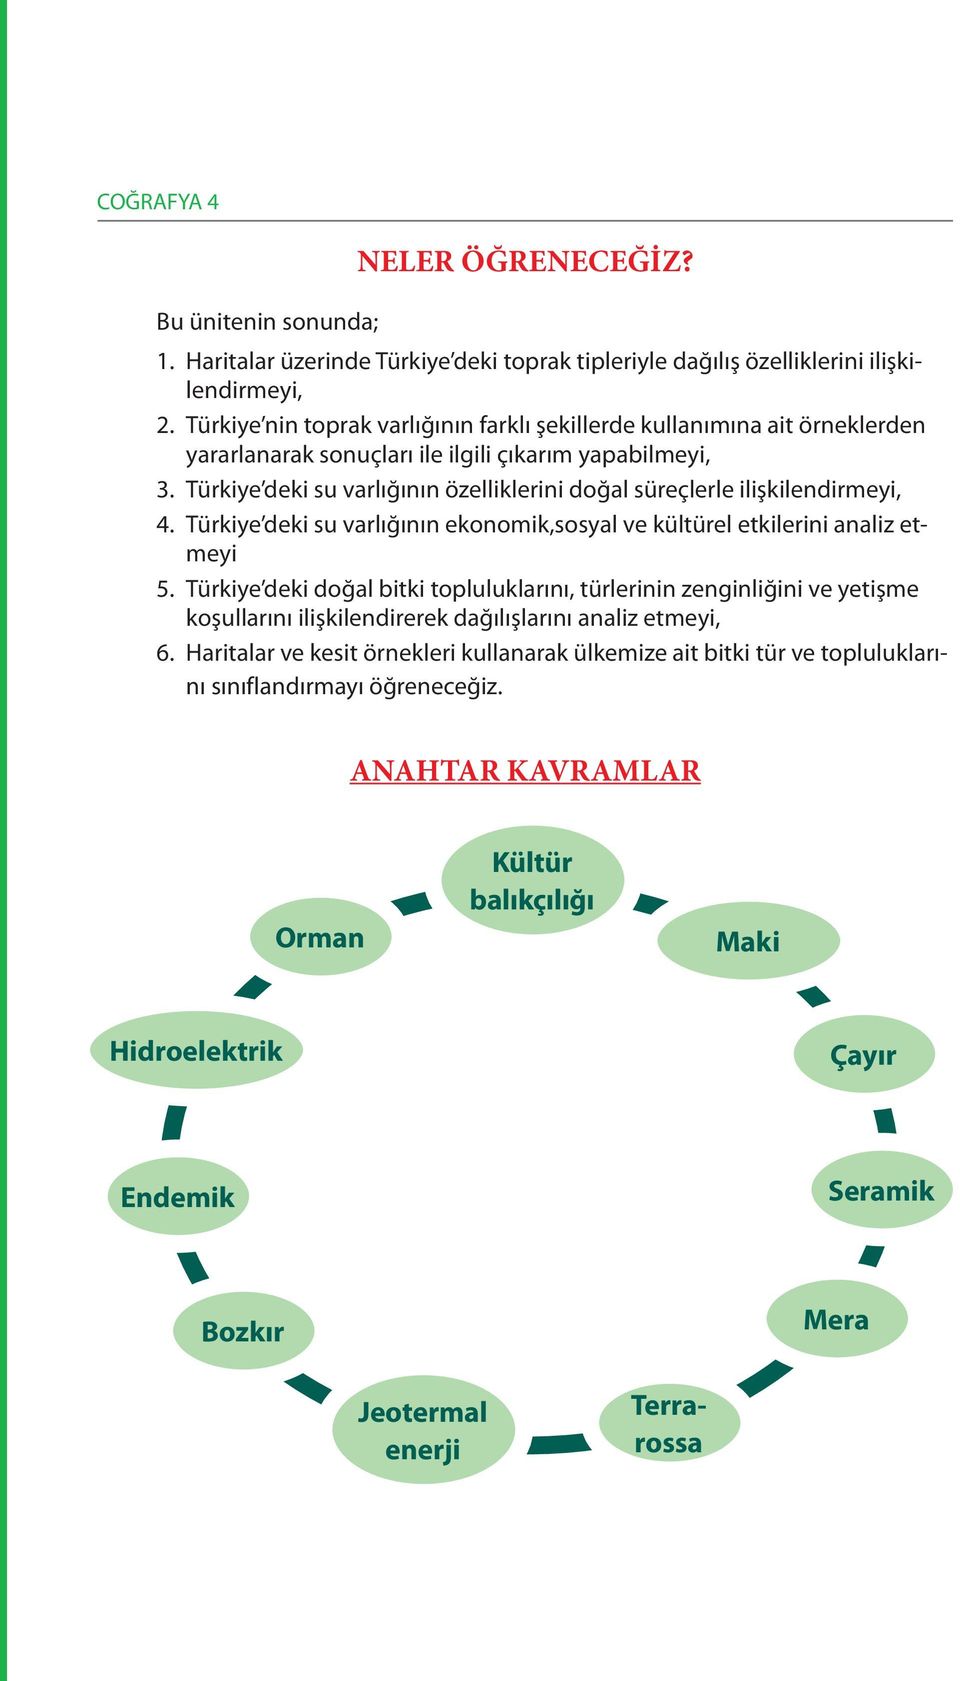 Türkiye deki su varlığının özelliklerini doğal süreçlerle ilişkilendirmeyi, 4. Türkiye deki su varlığının ekonomik,sosyal ve kültürel etkilerini analiz etmeyi 5.